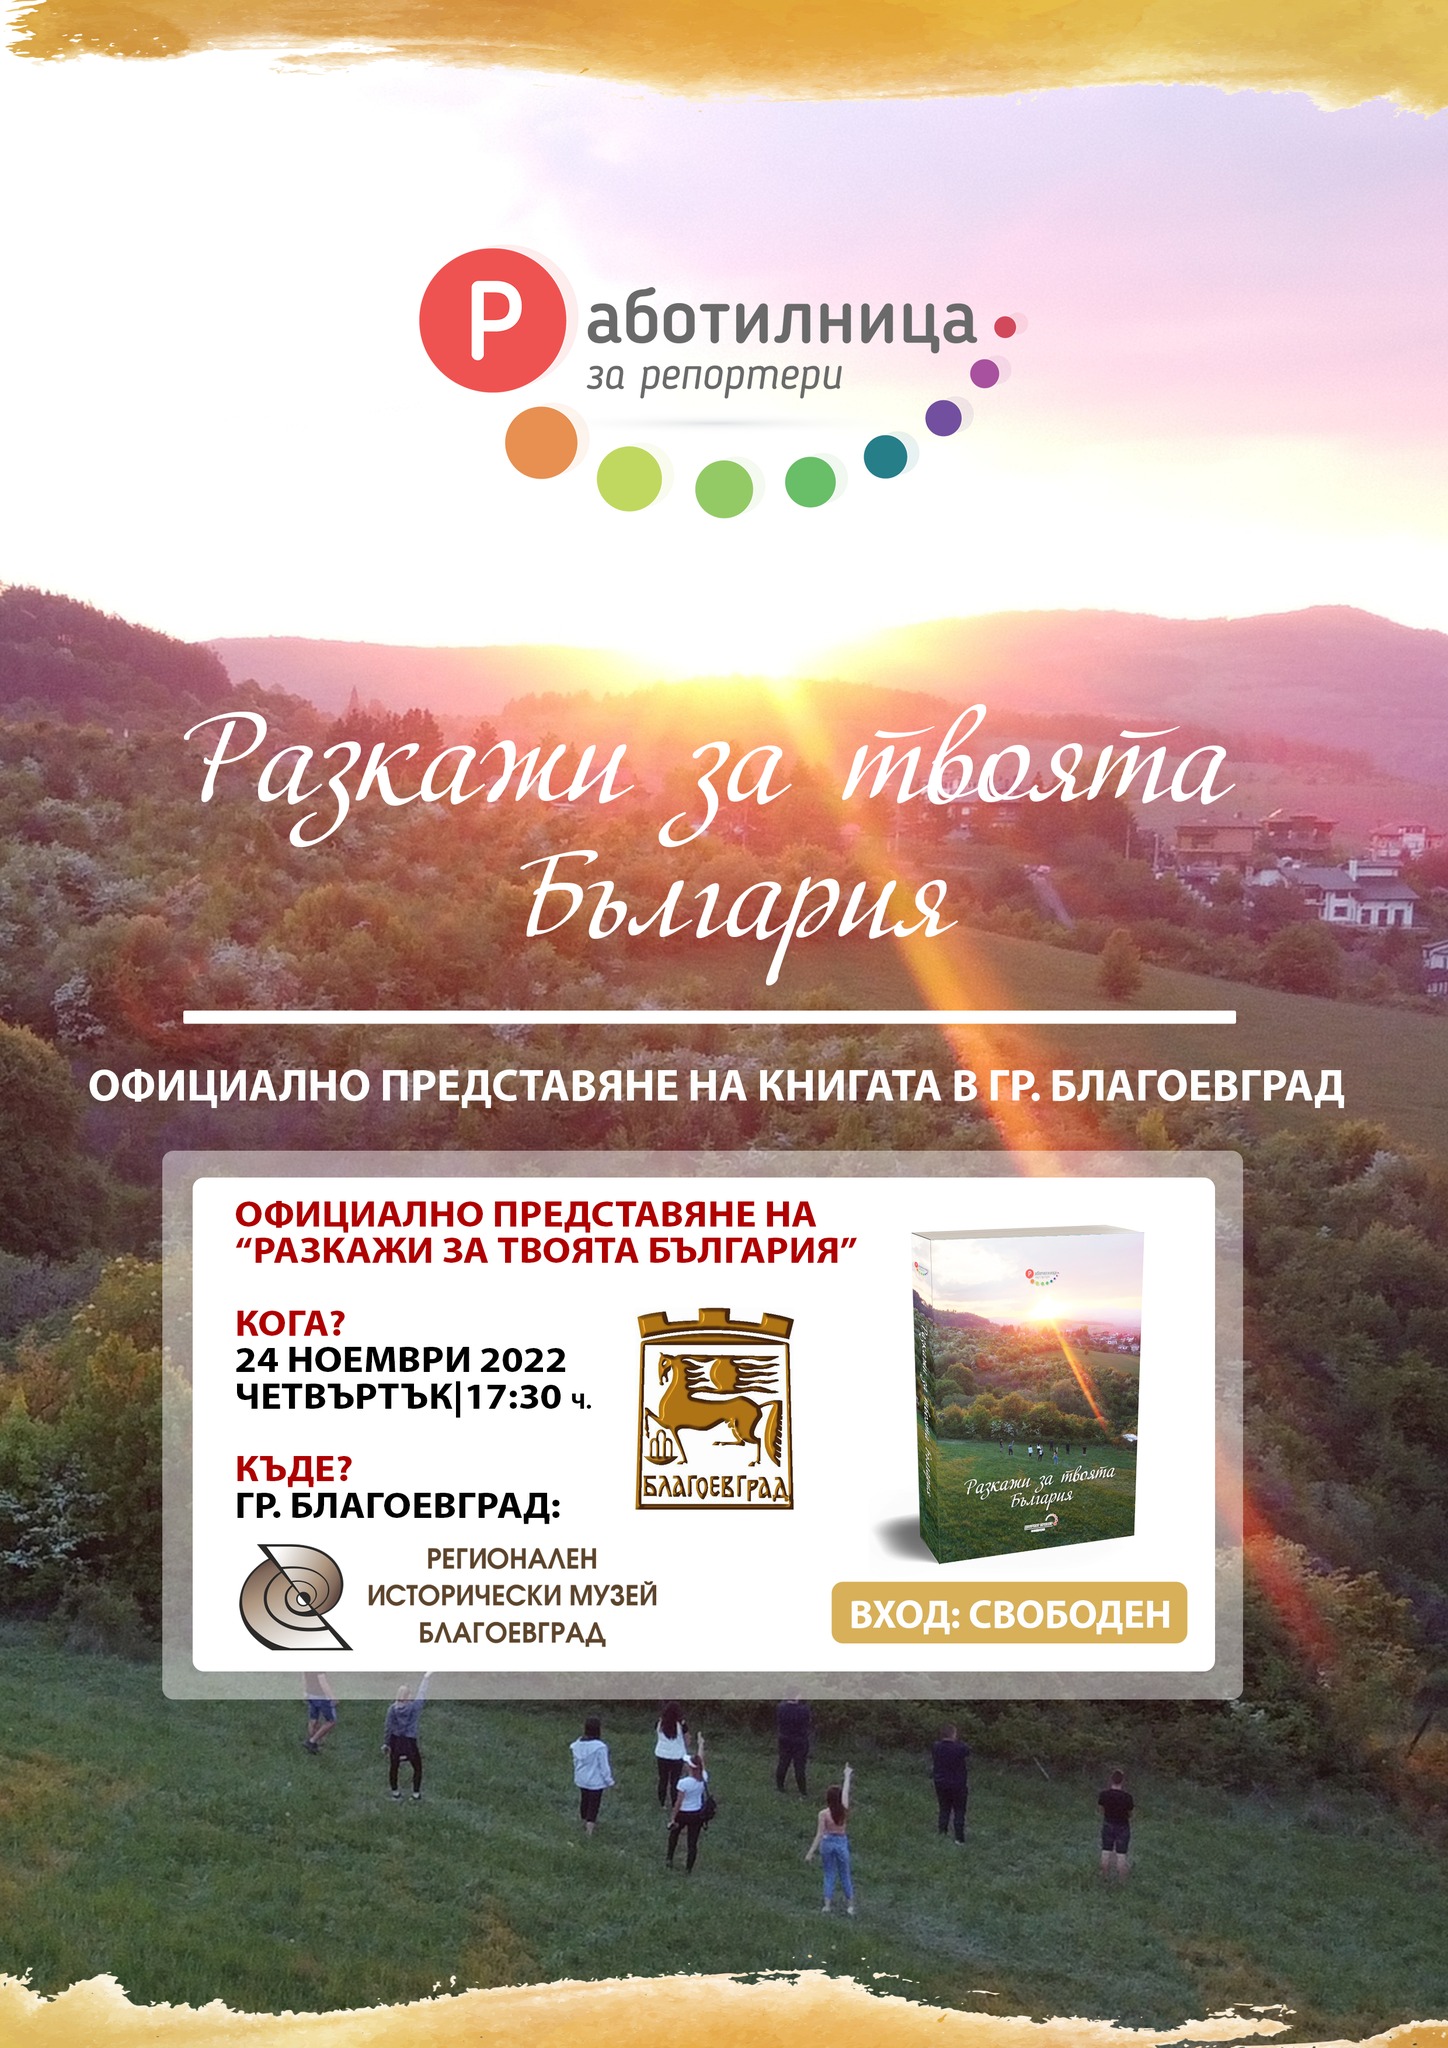 Книгата „Разкажи за твоята България“ ще бъде представена в Регионален исторически музей – Благоевград